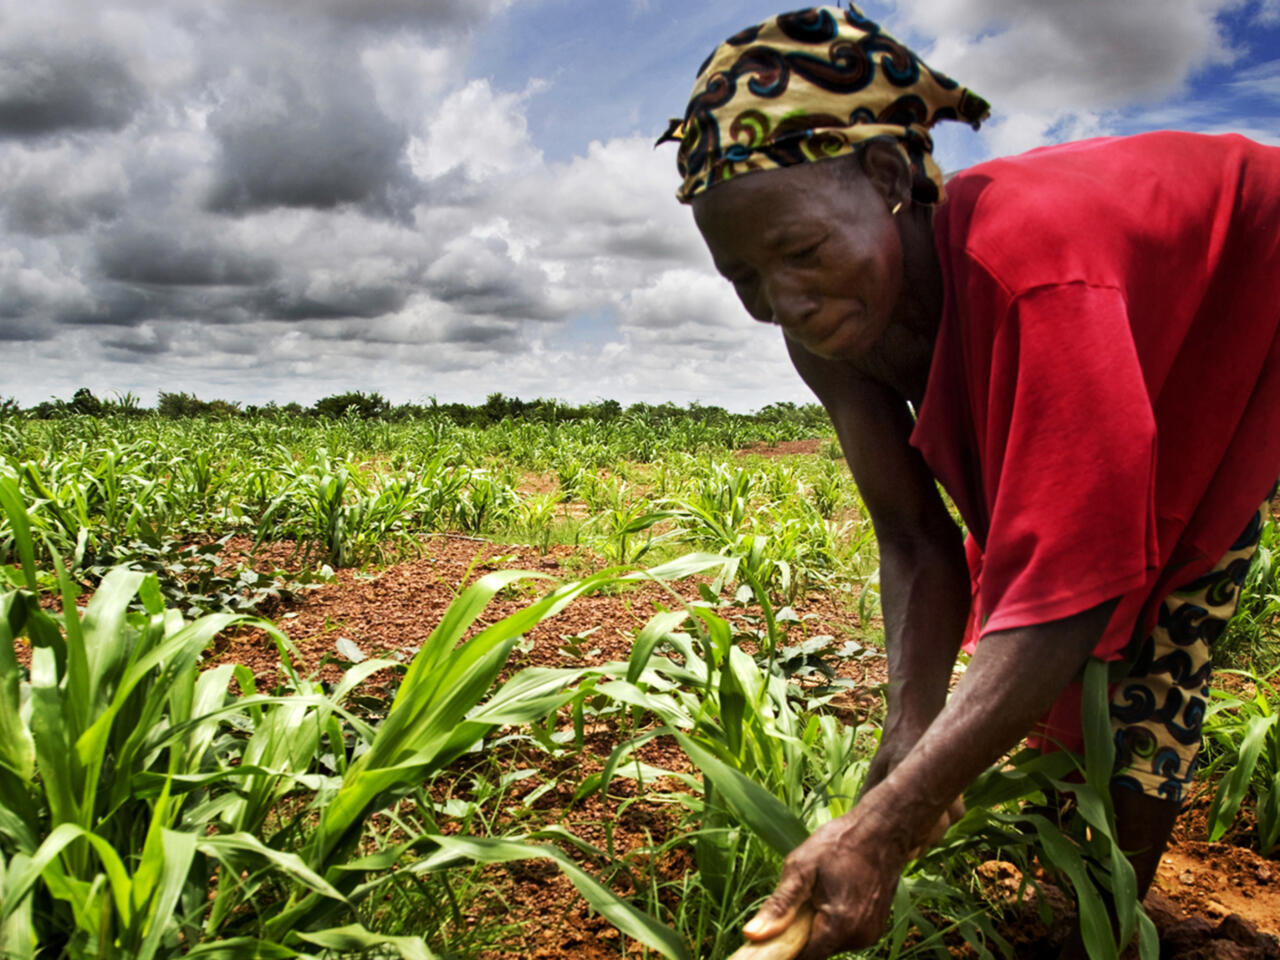 Comment donner de la valeur ajoutée aux produits agricoles cultivés en Afrique